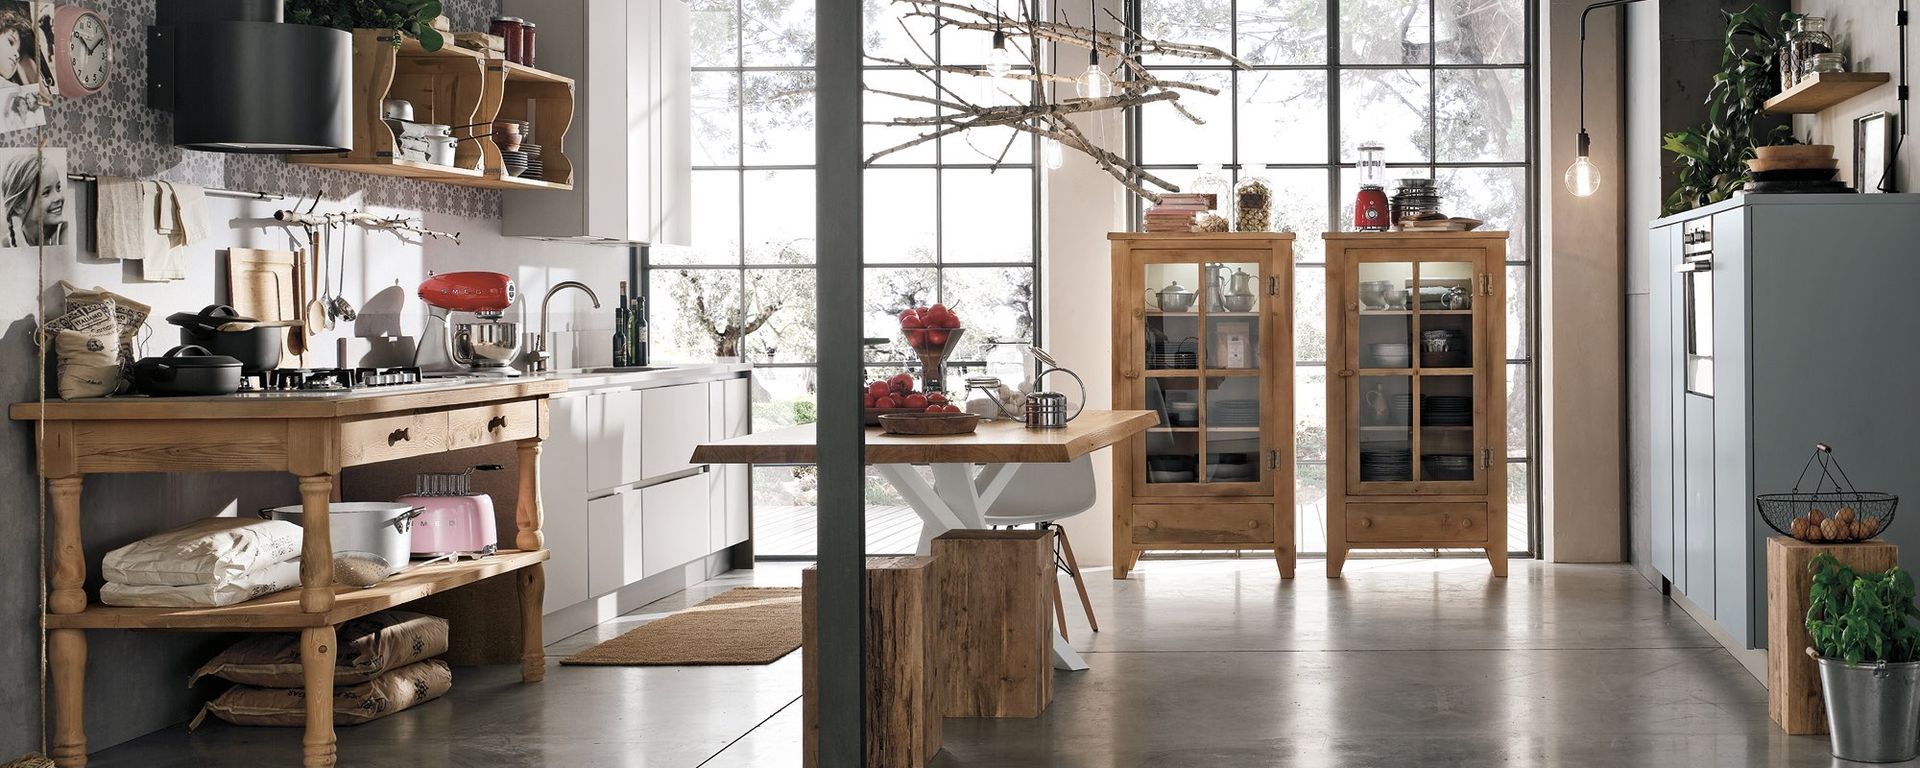 vista di una cucina creativa in stile di legno con due vetrine in legno -Maya